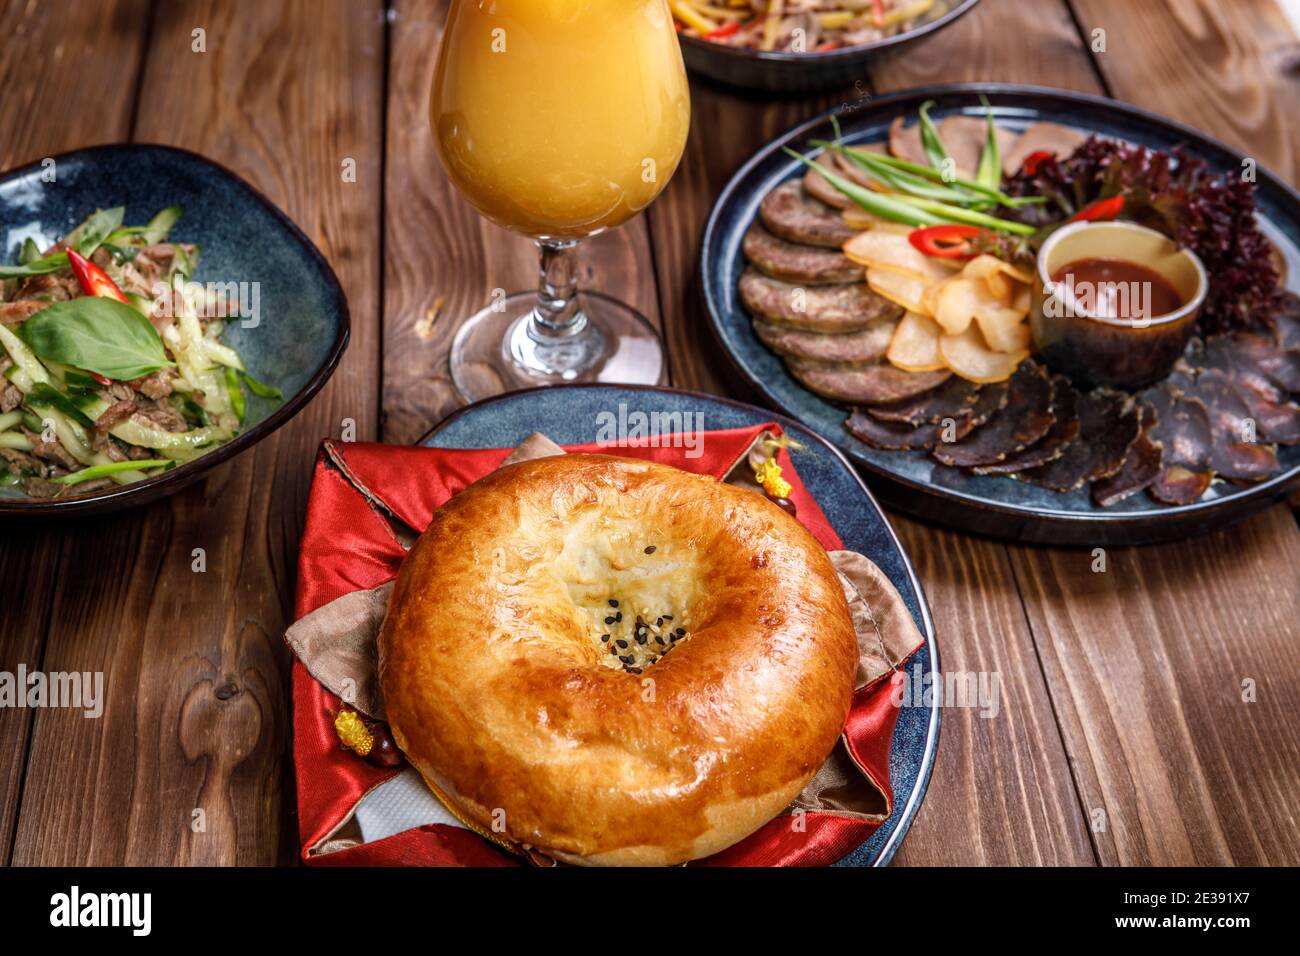 Serviert werden verschiedene Gerichte mit Gemüsescheiben, Fleischstücken, Salaten, Orangensaft und einem Brötchen auf braunem Holzhintergrund. Stockfoto